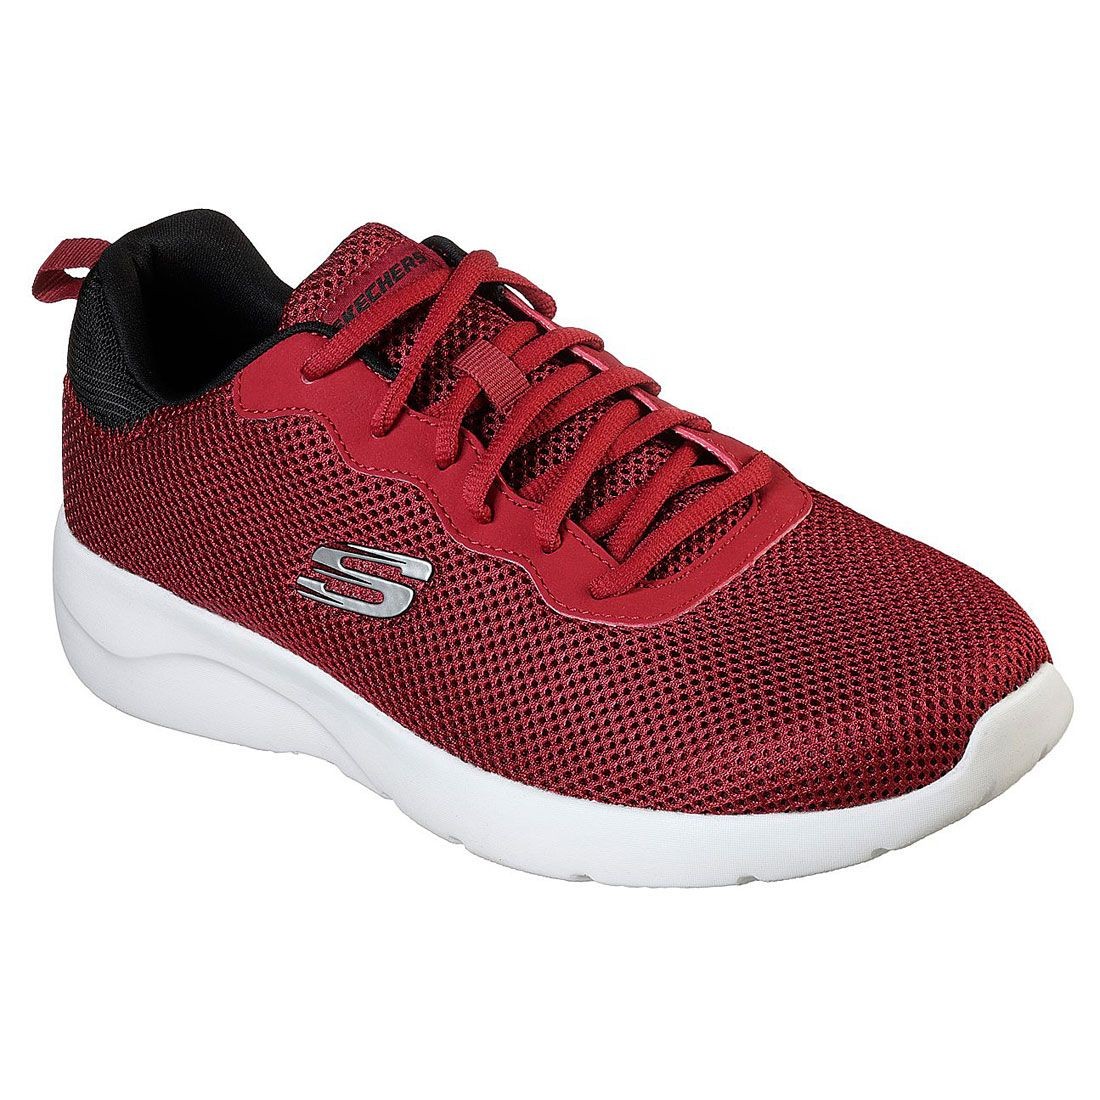 Skechers Men's Shoe 58362 Red